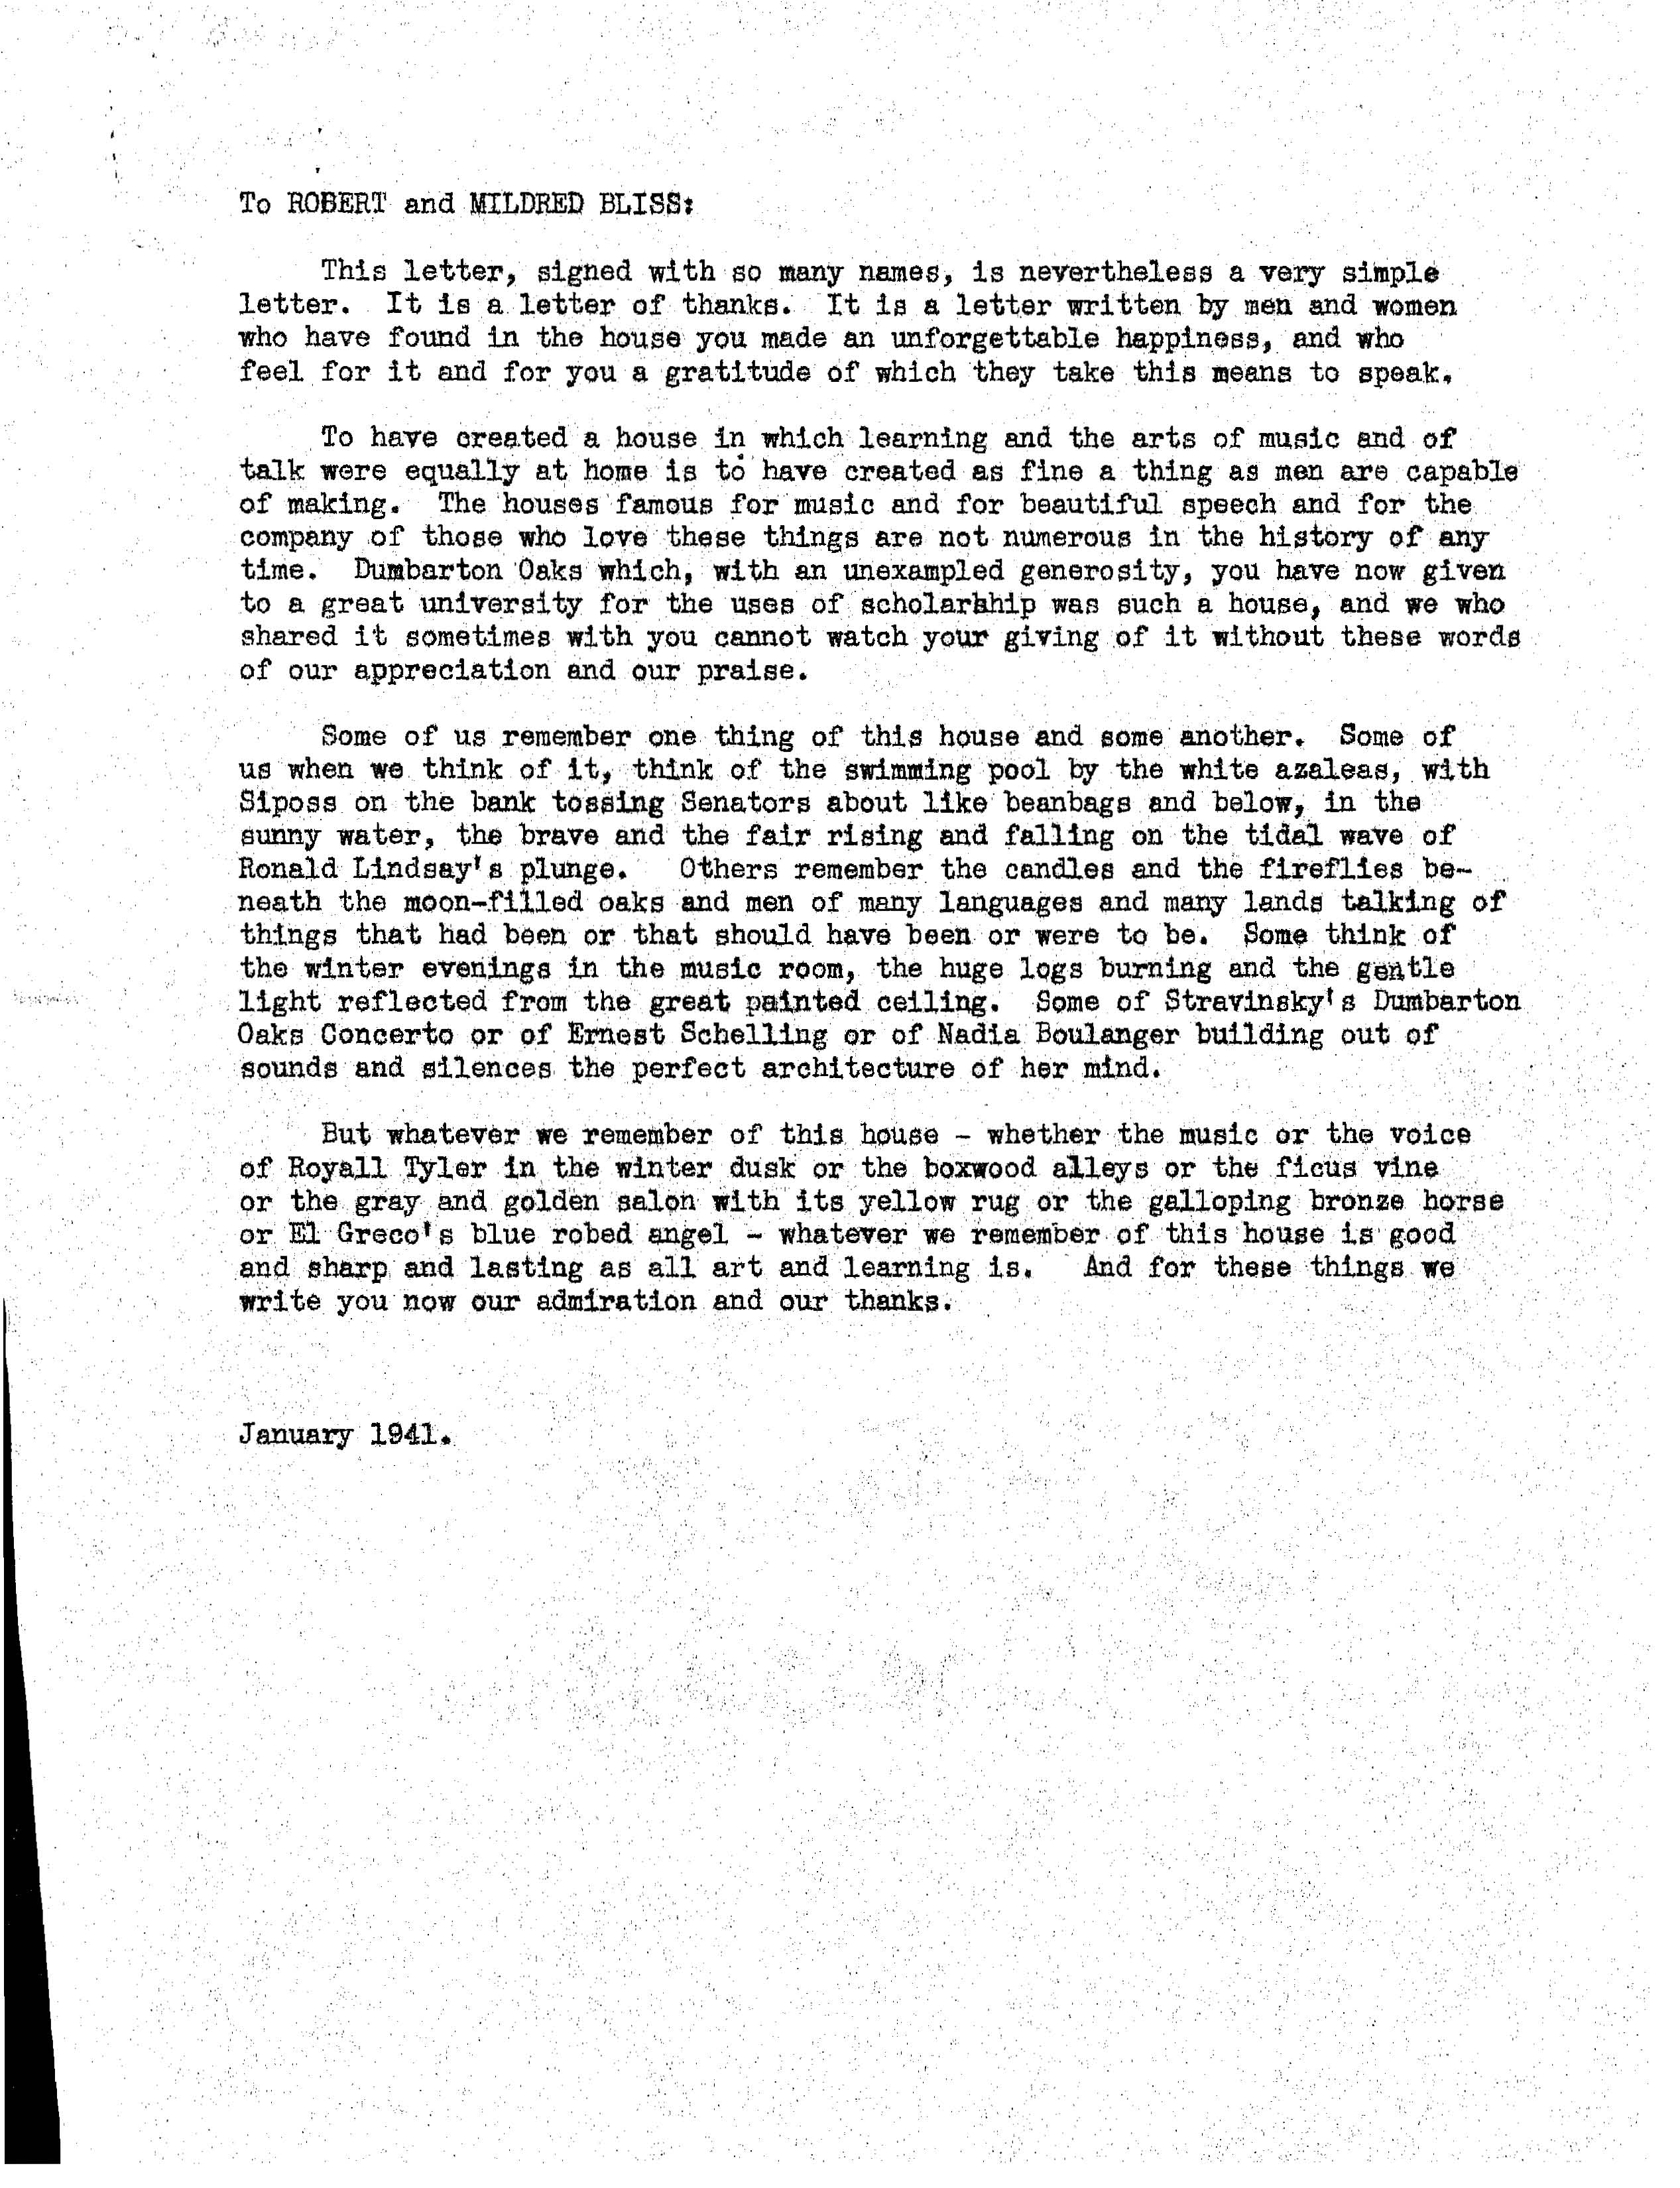 Letter from Bellinger to Blisses, Jan. 1941 